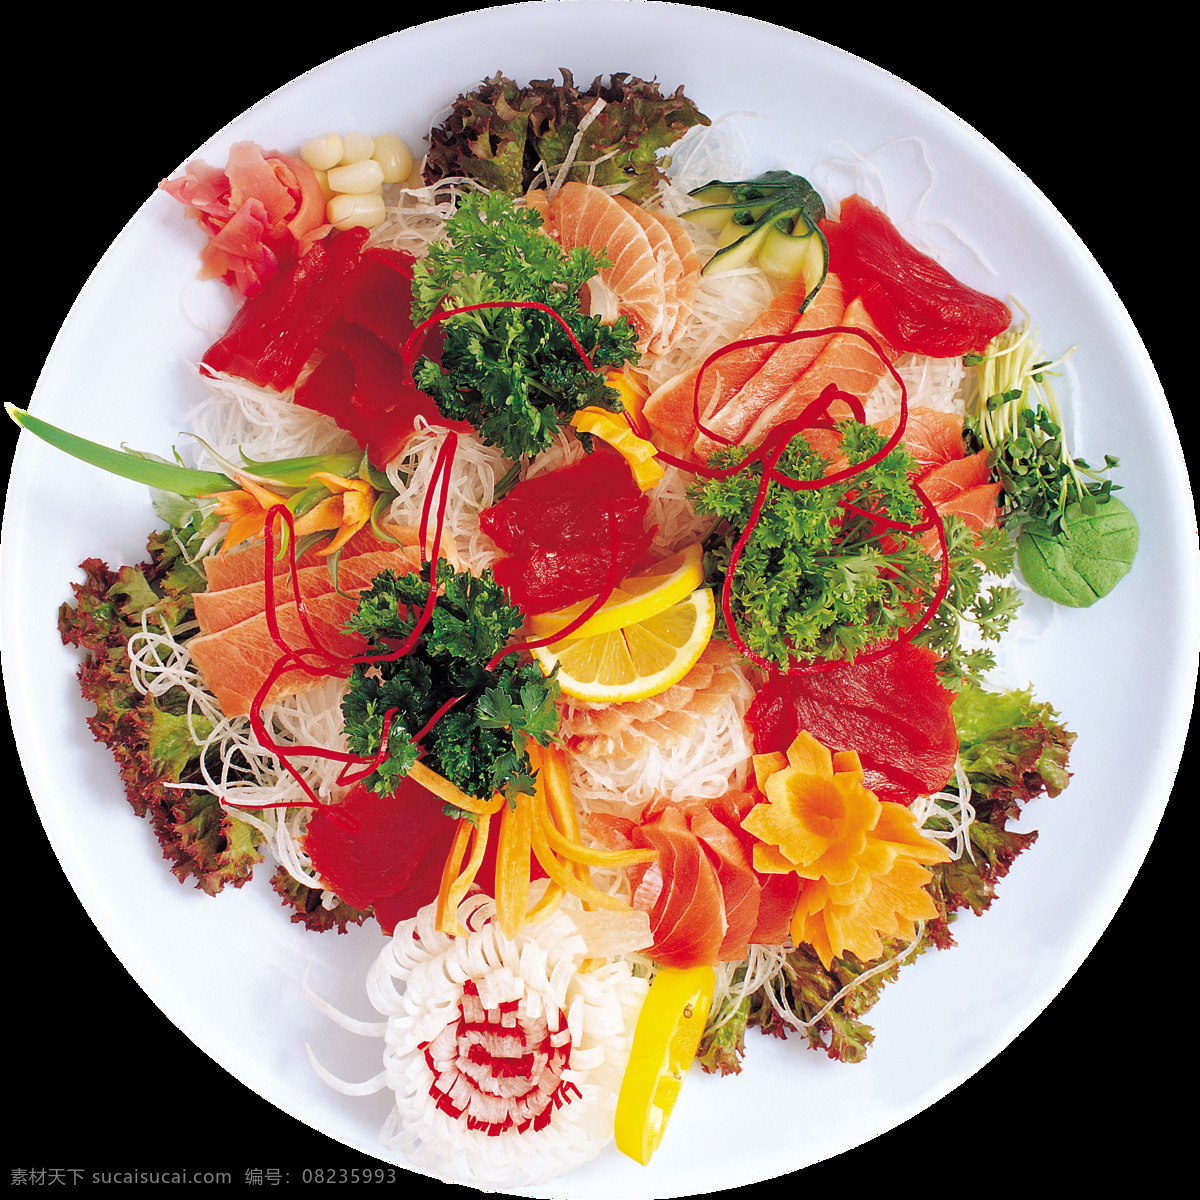 清新 白色 盘子 刺身 料理 美食 产品 实物 白色盘子 产品实物 日式料理 寿司